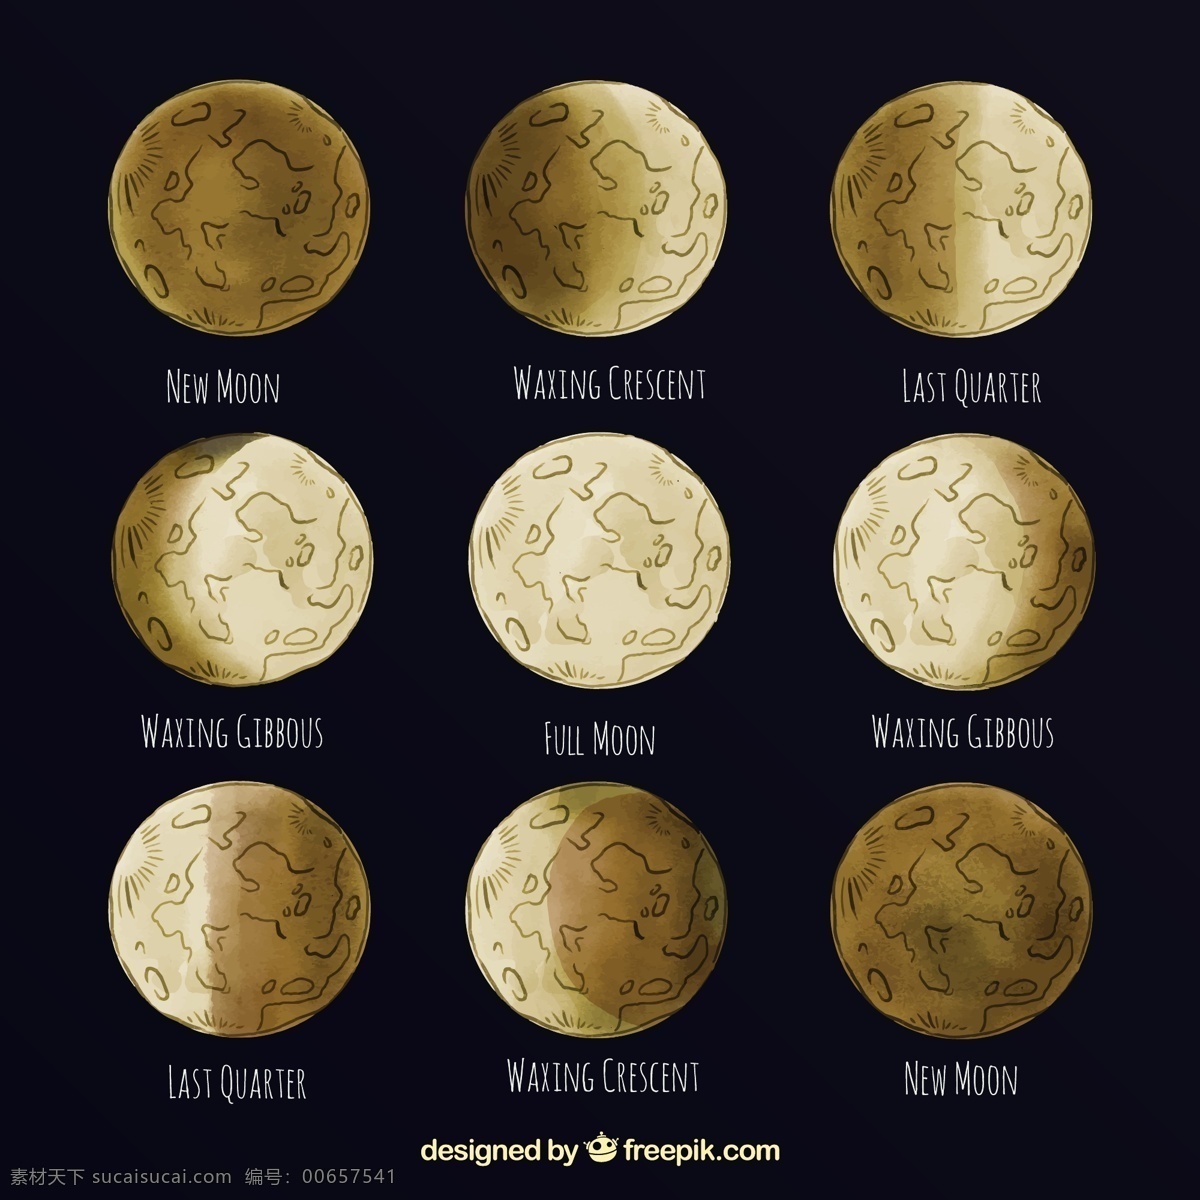 月球的大阶段 日历 手 天空 手绘 月亮 数字 时间 夜晚 时间表 计划者 夜空 宇宙 年 季节 画 占星术 月 满月 周计划者 月相